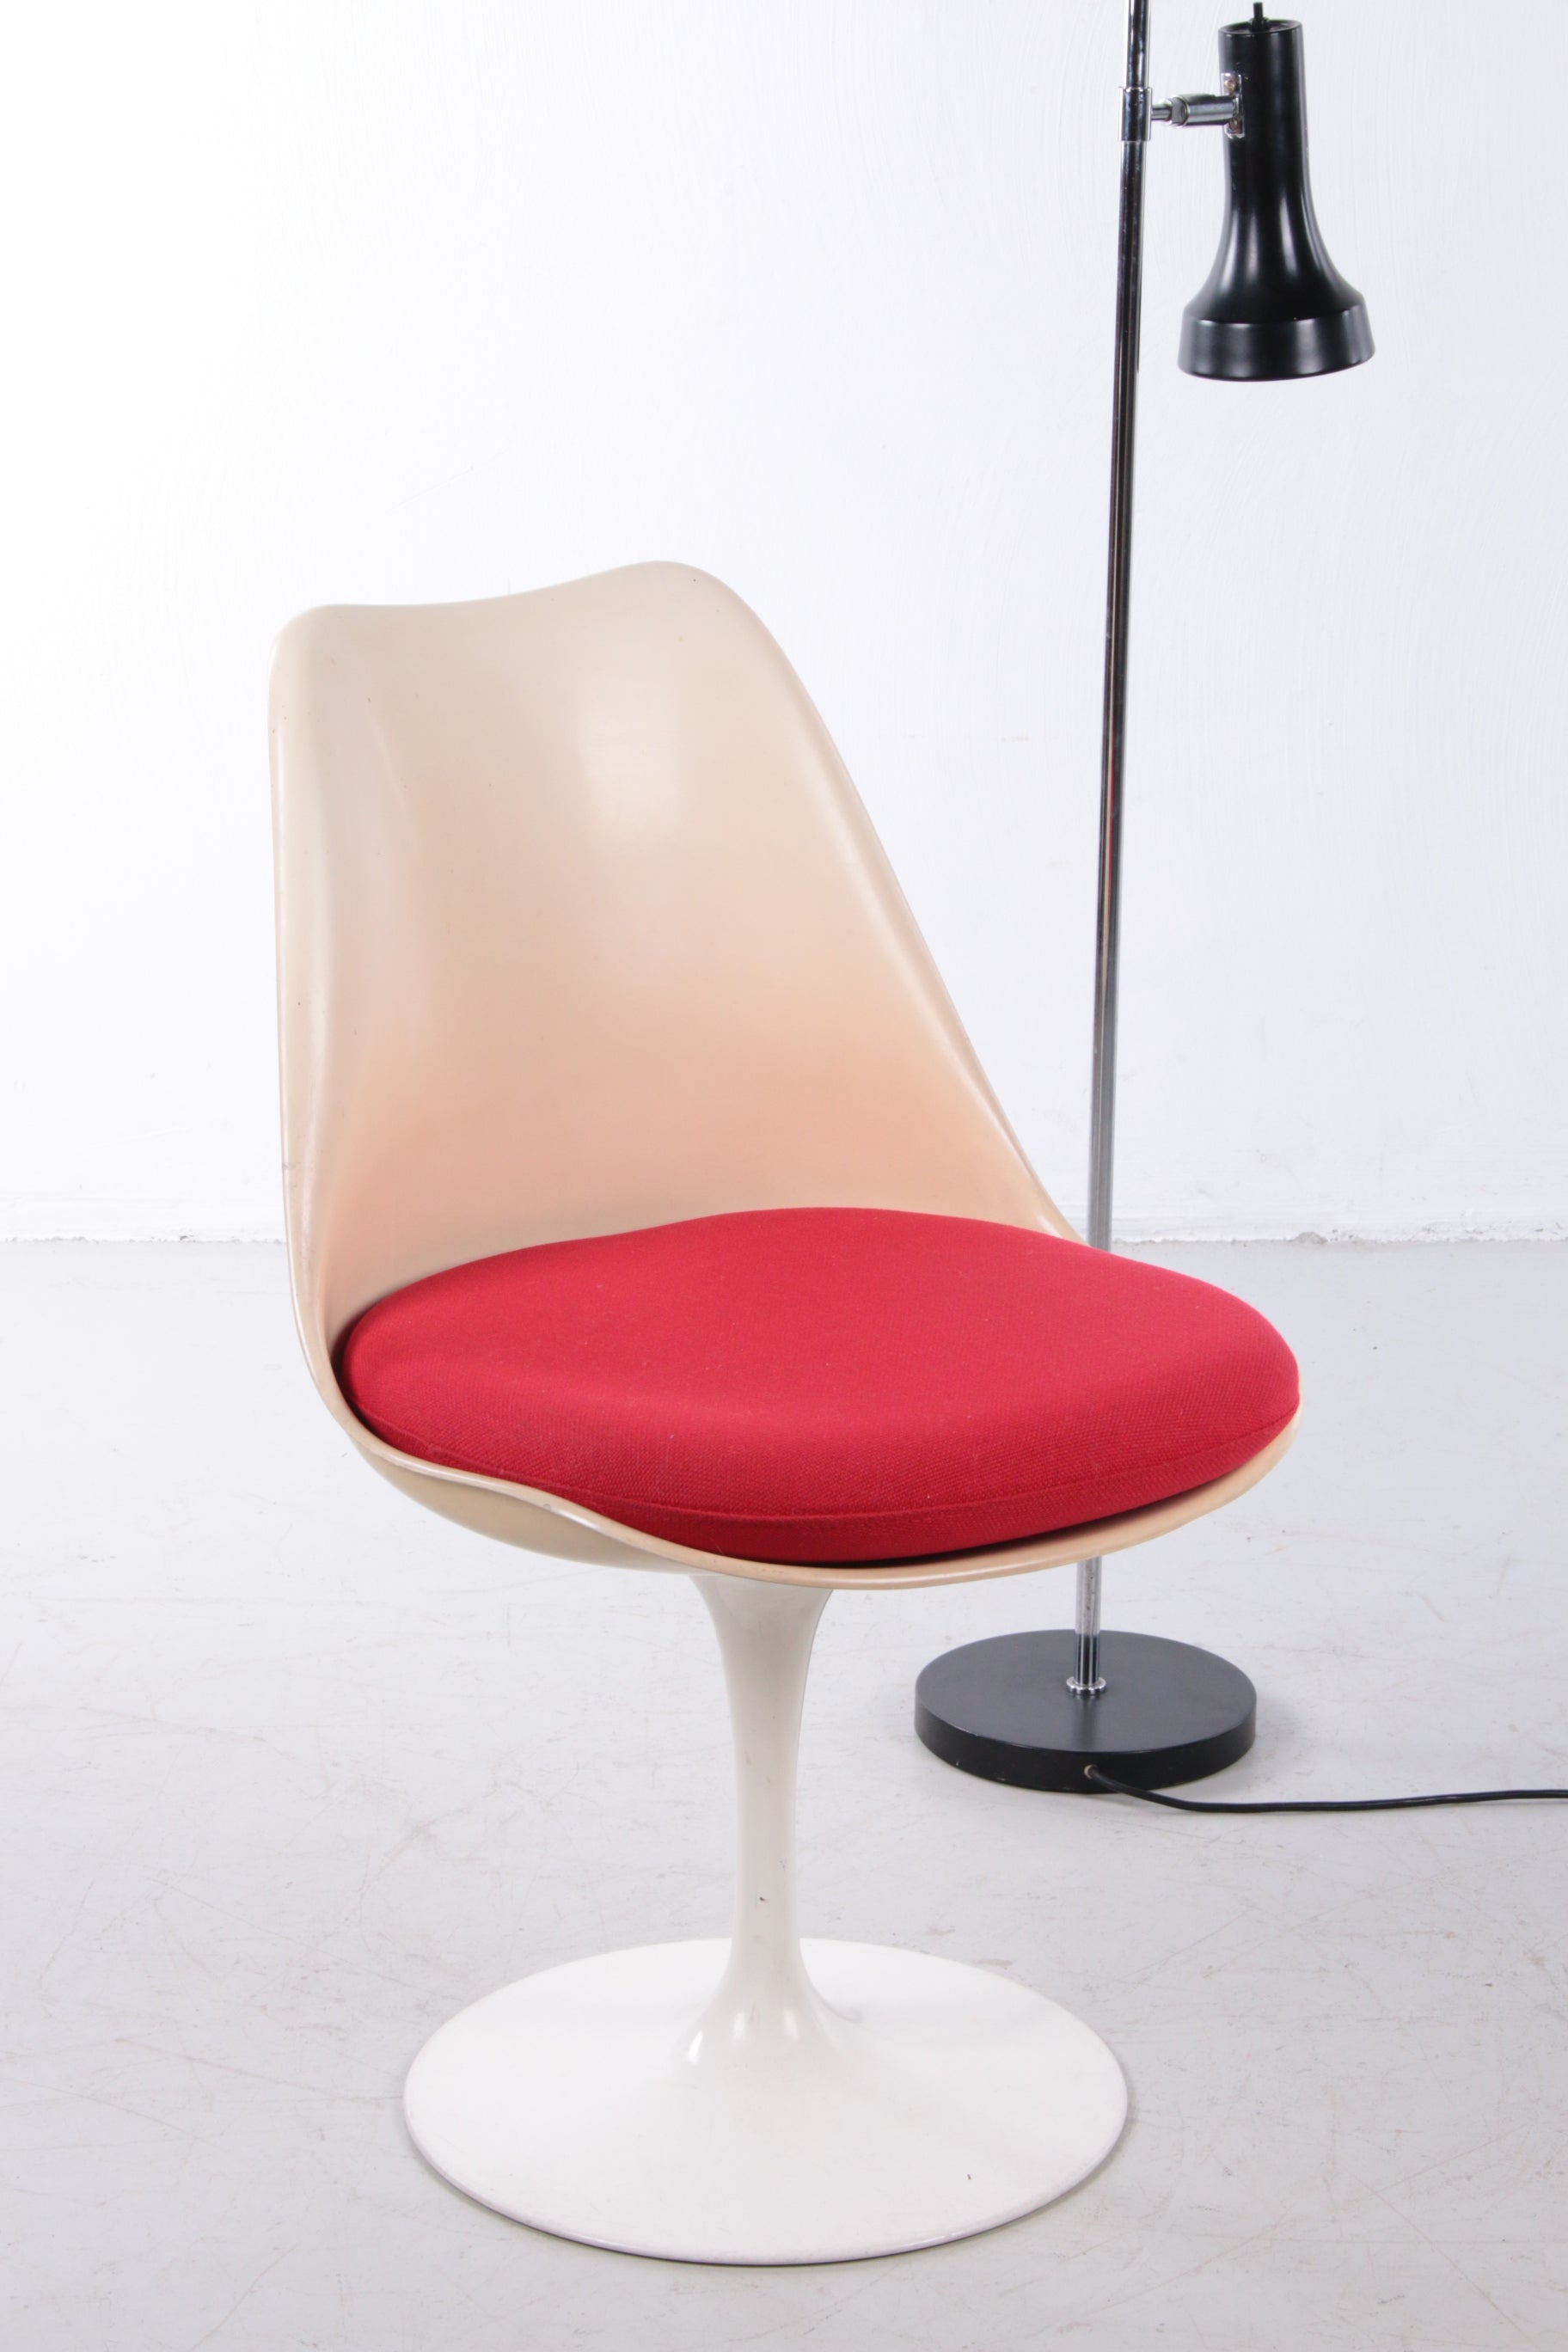 Eero Saarinen Knoll Witte rode draai stoel,60s